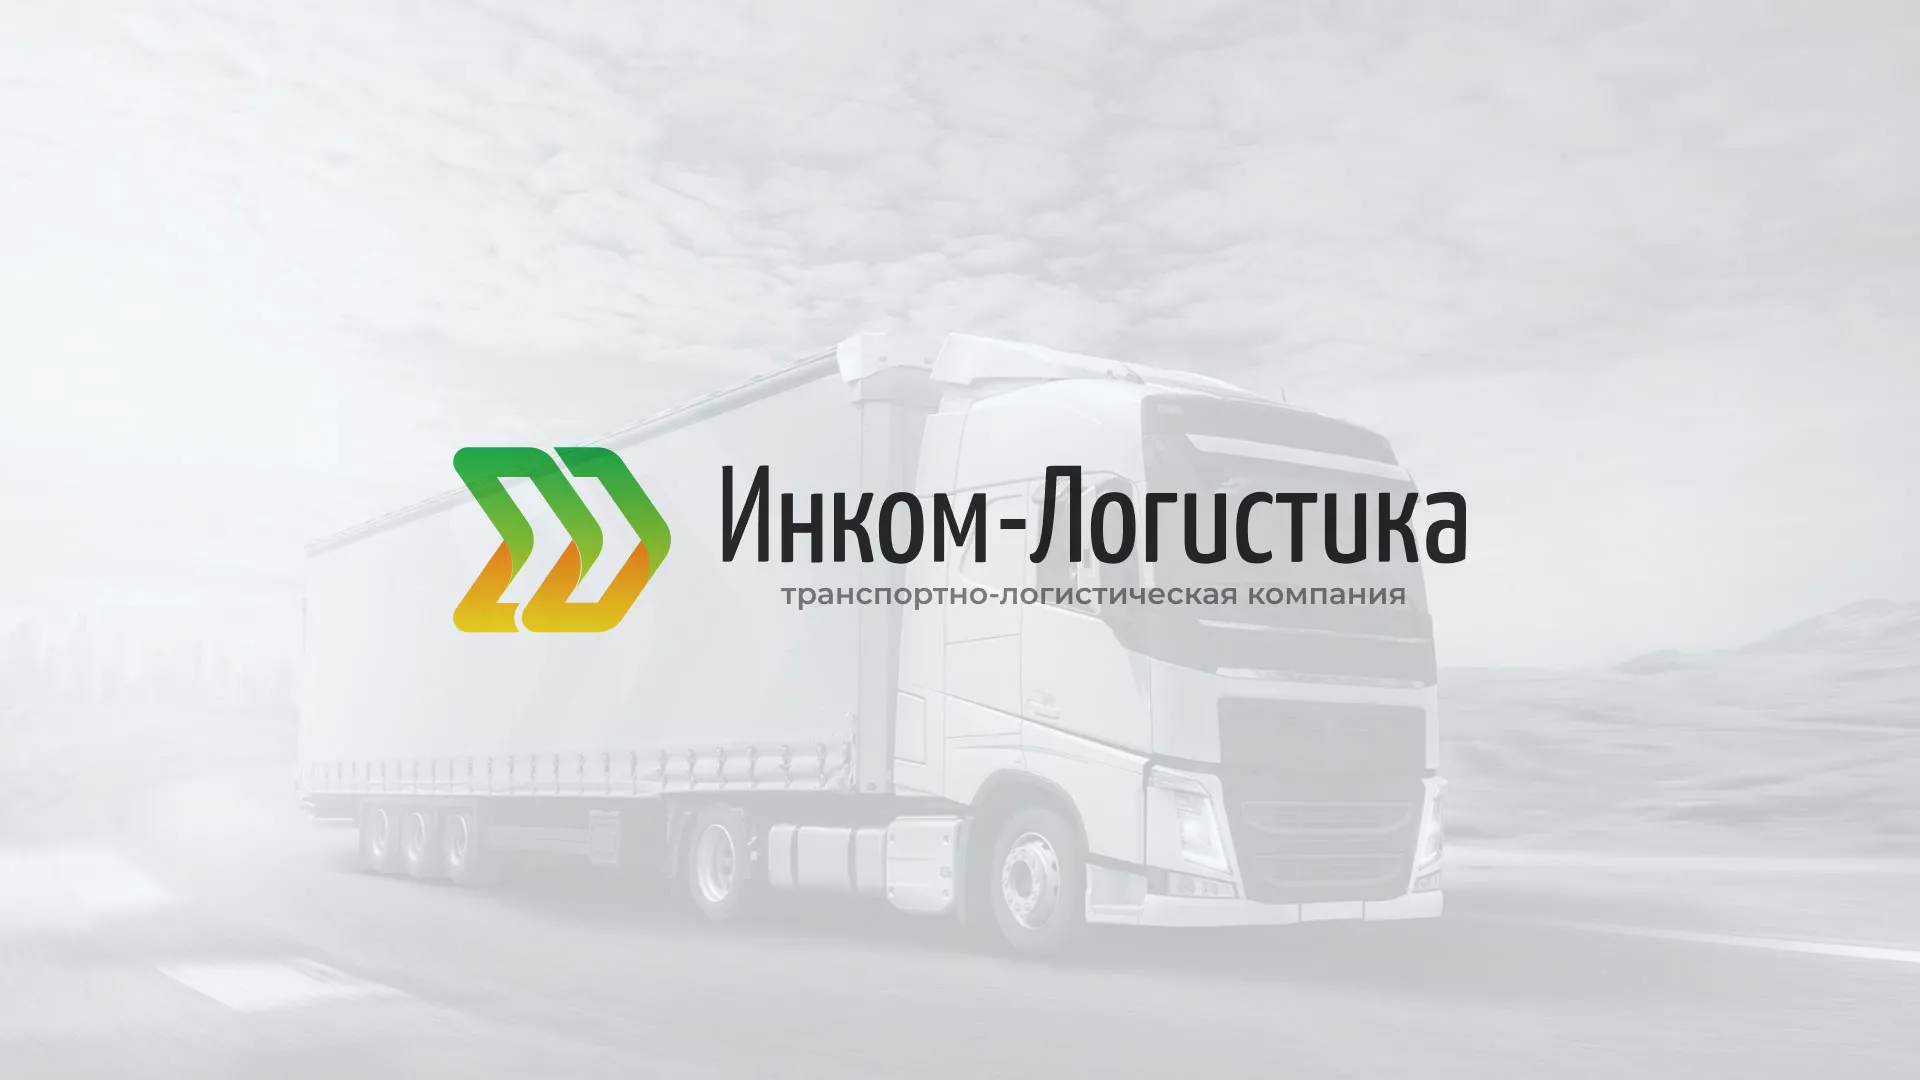 Разработка логотипа и сайта компании «Инком-Логистика» в Александрове